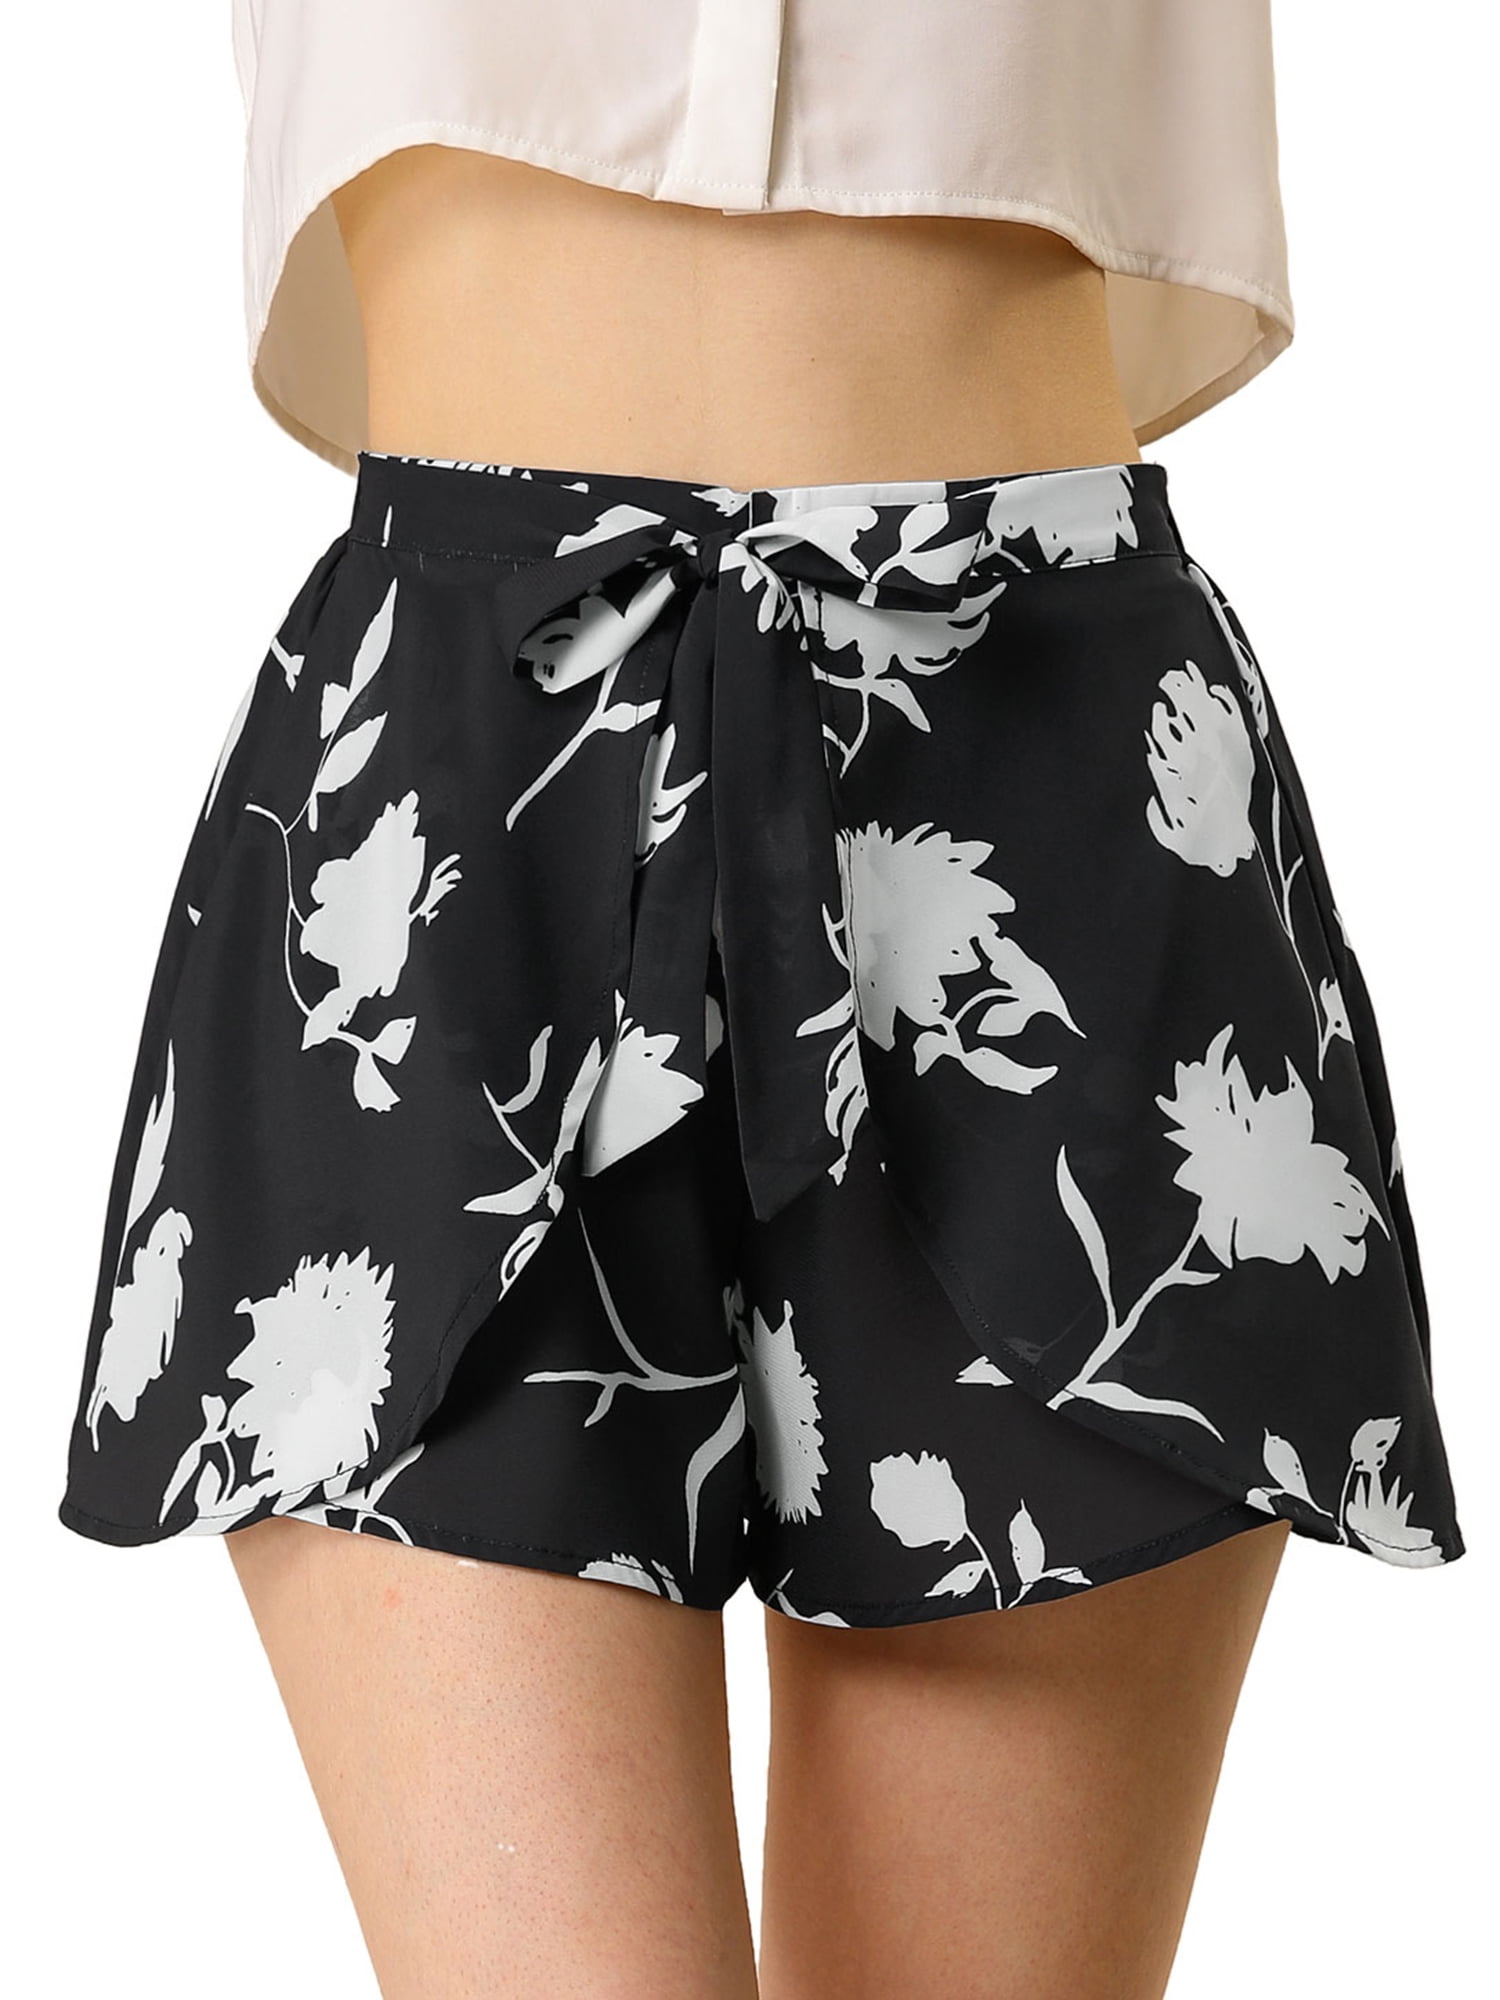 Womens Shorts Casual Elastic Waist Summer Beach Floral Shorts Size M 